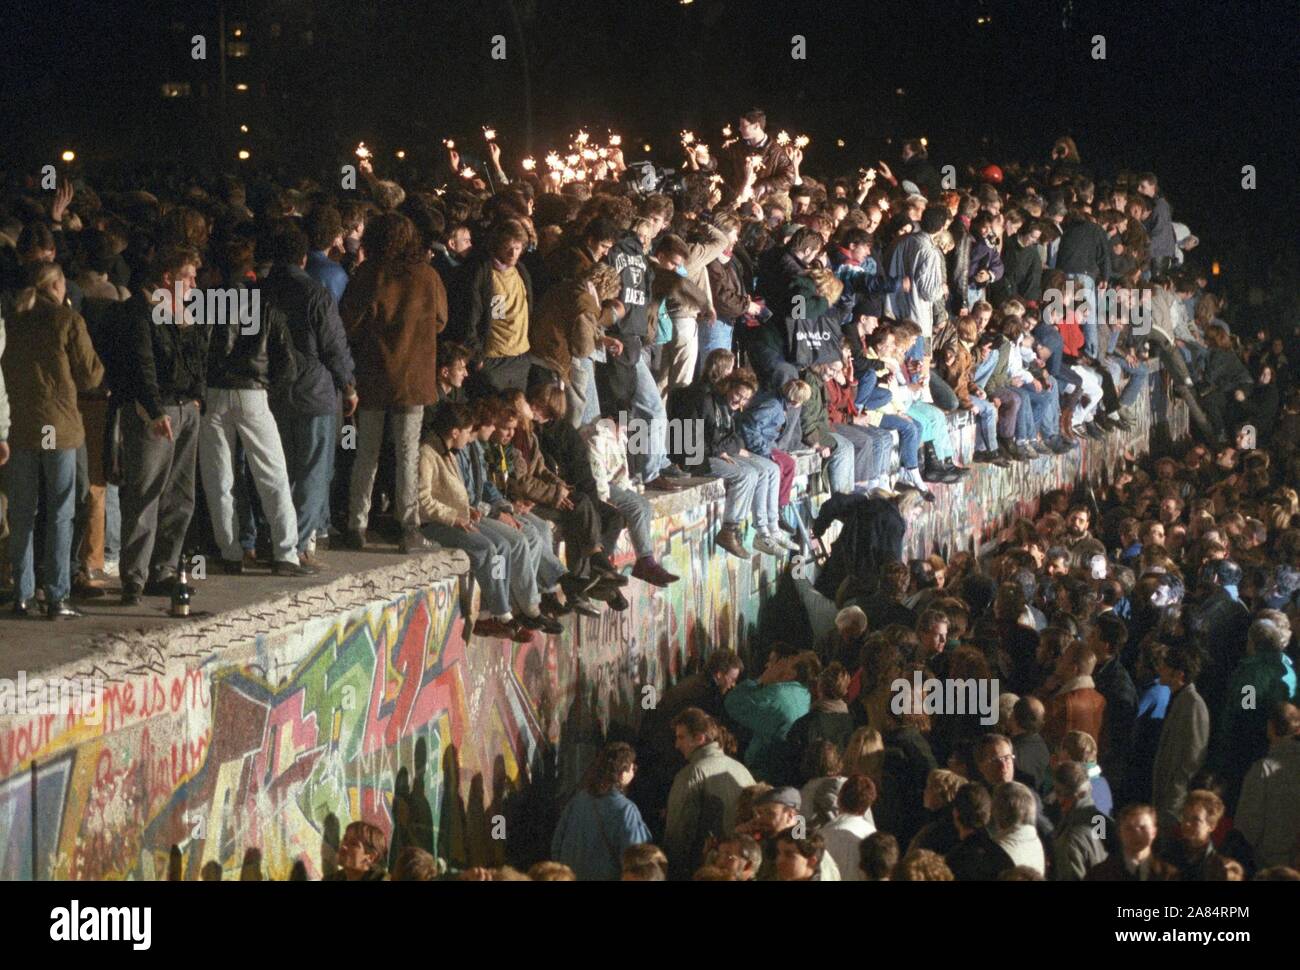 Berliner und Menschen aus ganz Deutschland feiern Sie mit Wunderkerzen auf der Berliner Mauer Am 11. November 1989. Nachdem die DDR-Führung hatte einige Grenzübergangsstellen, Millionen von Ostdeutschen in den Westen für kurze Reisen zurückgelegte geöffnet. (Dpa/IPA/Fotogramma, Berlin - 2014-10-17) ps das Foto ist verwendbar in Bezug auf den Kontext, in dem es aufgenommen wurde, und ohne beleidigende Absicht der Anstand des Volkes vertreten Redaktionelle Nutzung Stockfoto